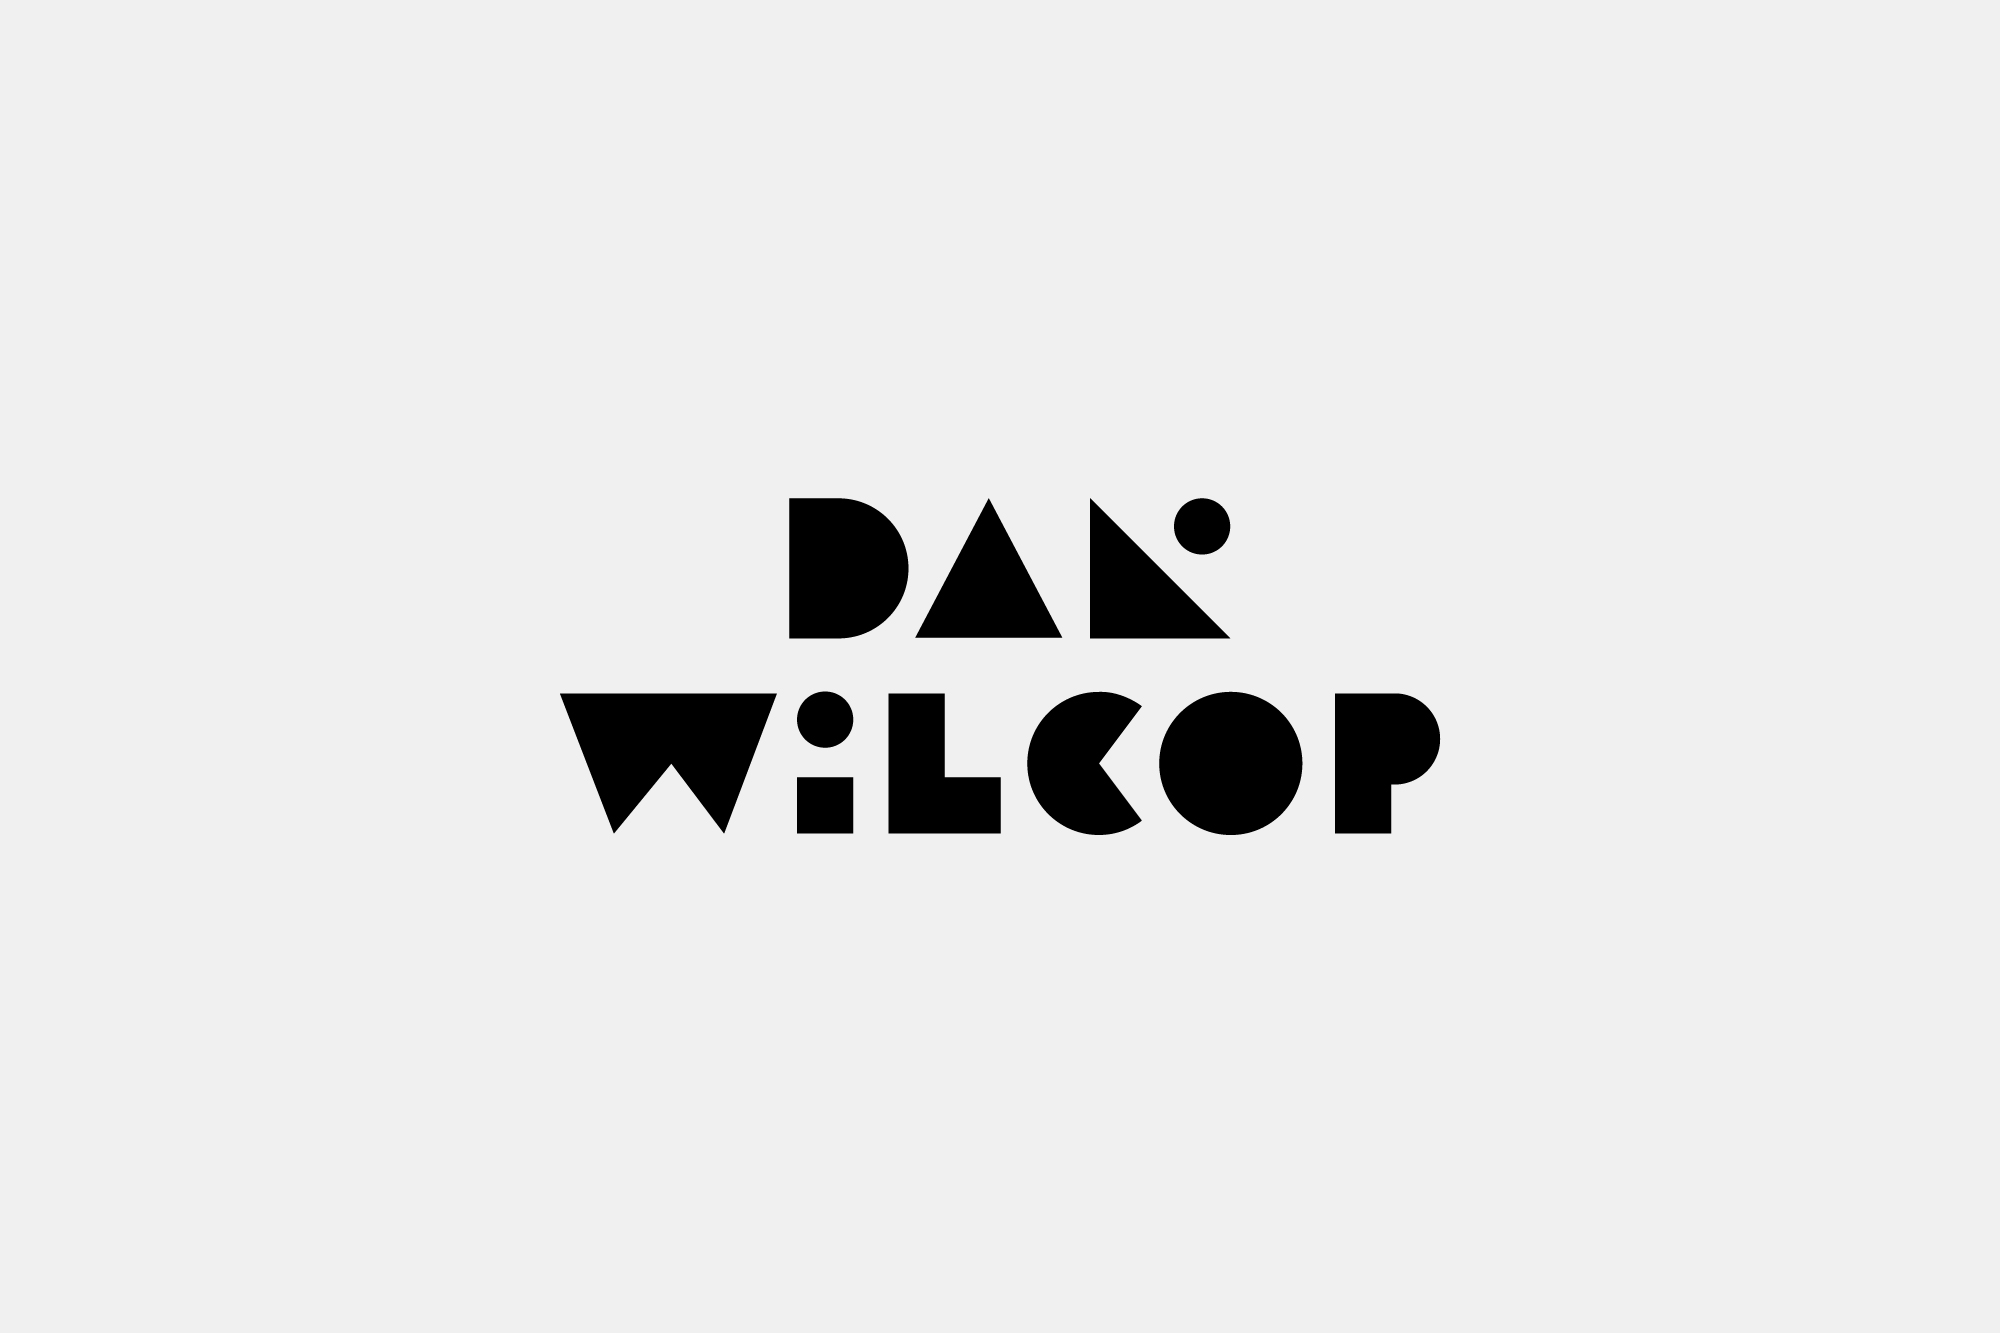 DW_Logo